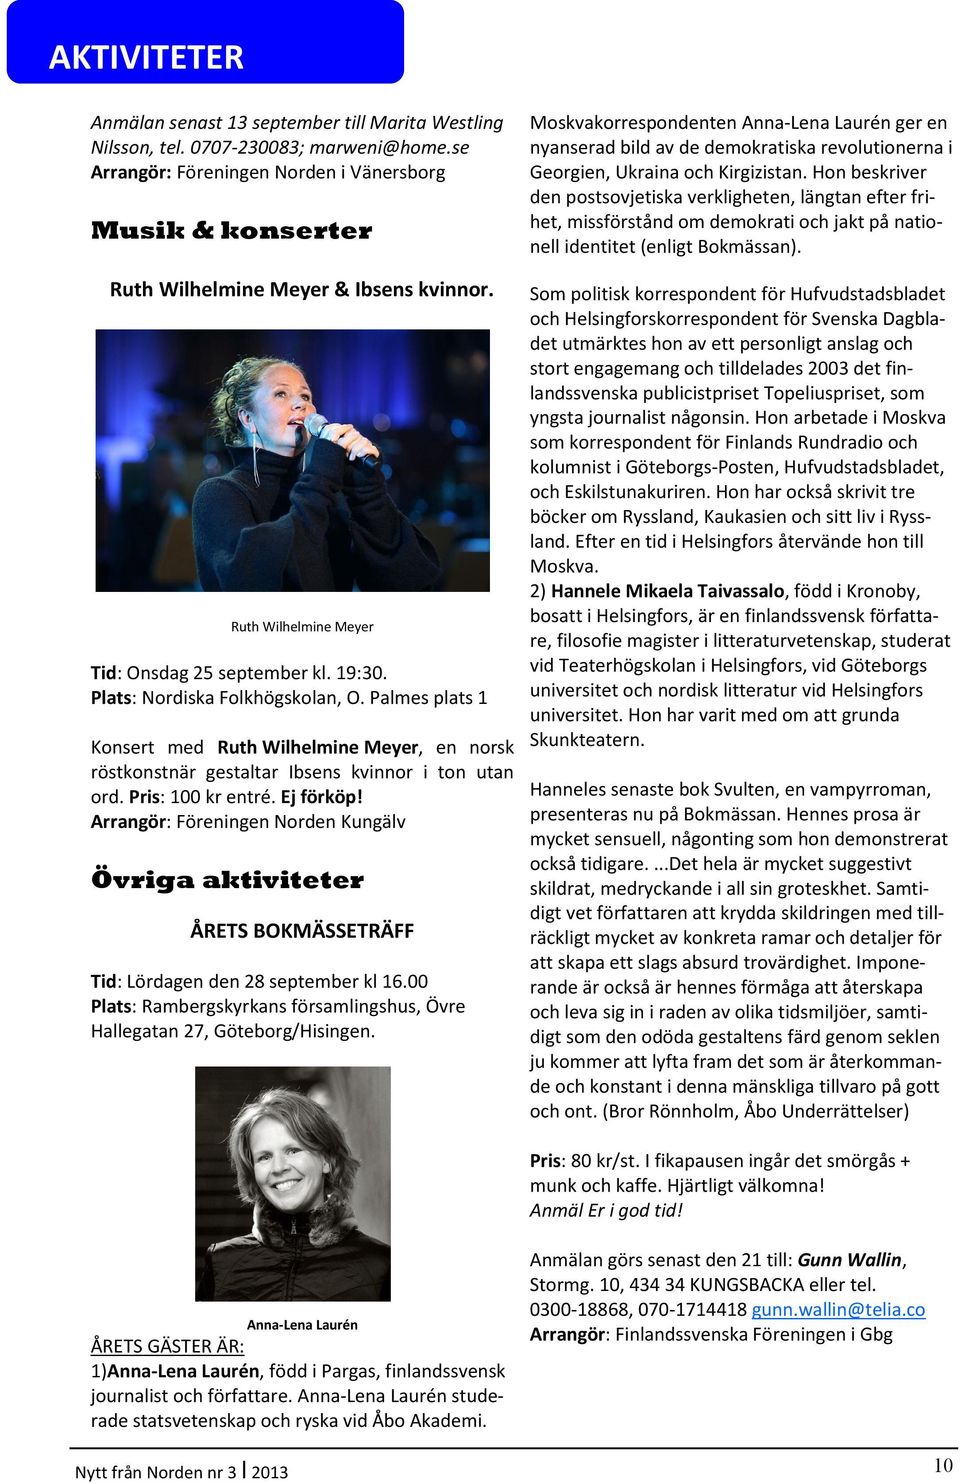 Palmes plats 1 Konsert med Ruth Wilhelmine Meyer, en norsk röstkonstnär gestaltar Ibsens kvinnor i ton utan ord. Pris: 100 kr entré. Ej förköp!